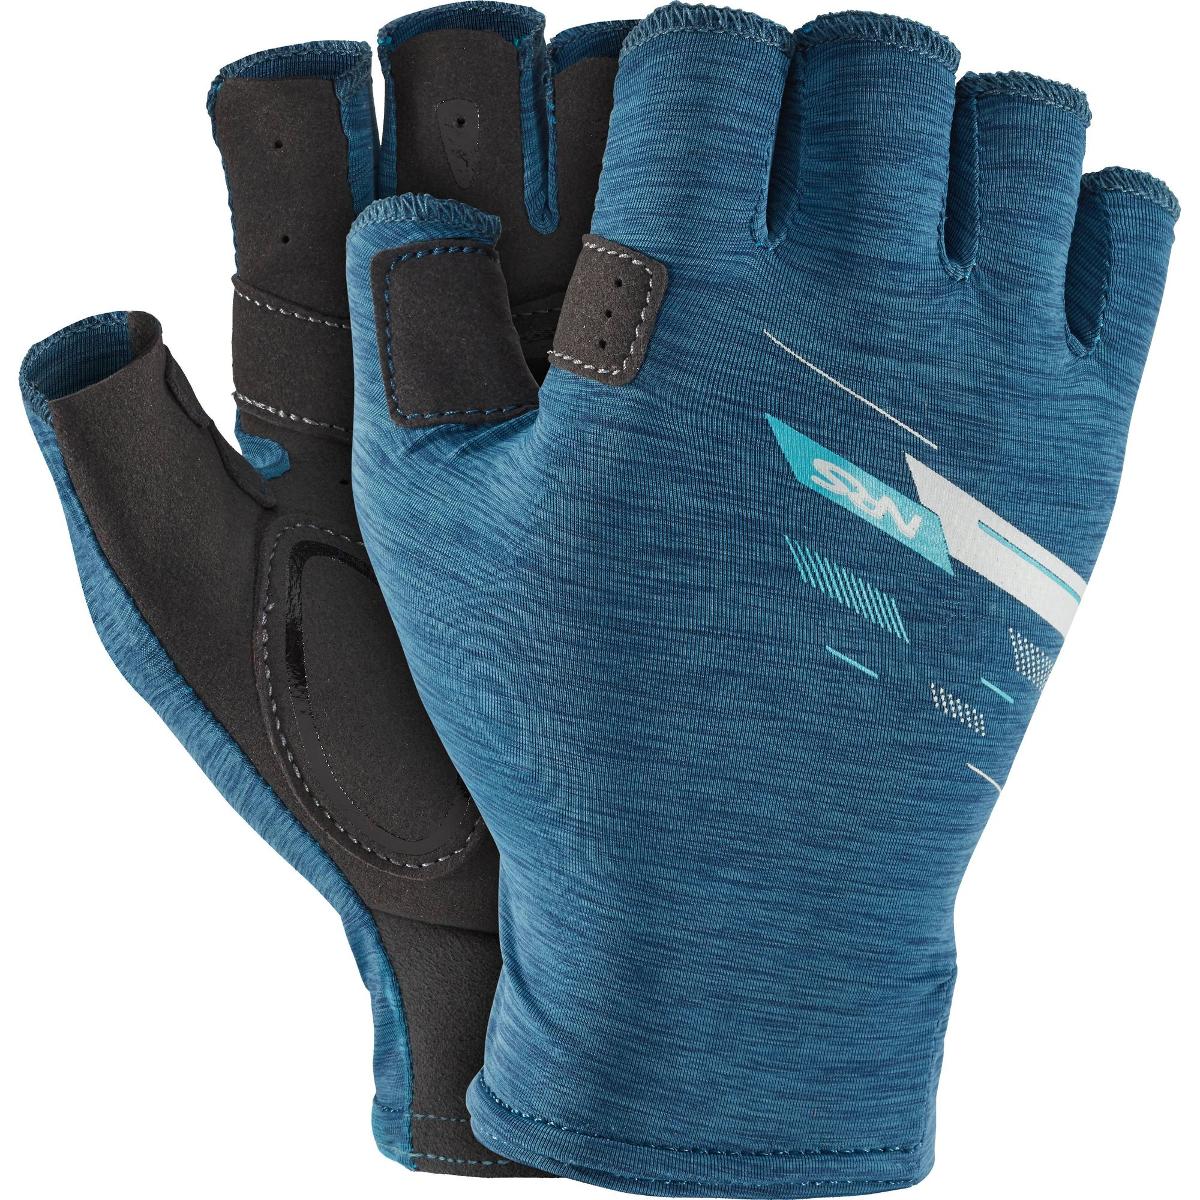 NRS Boater Gloves, Men's